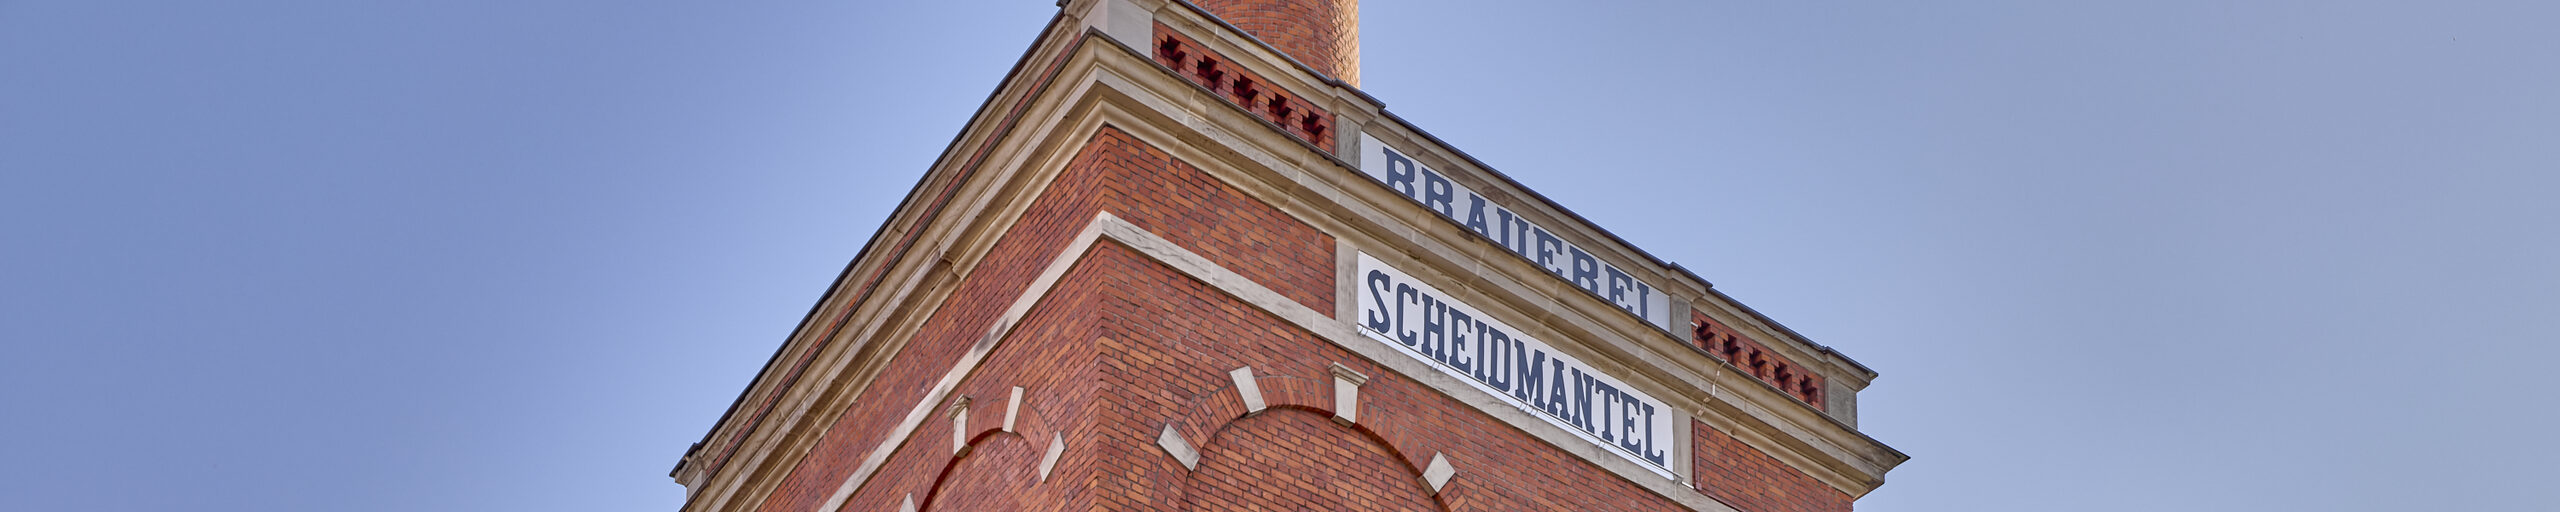 Aufnahme des Schornsteins der ehemaligen Brauerei Scheidmantel